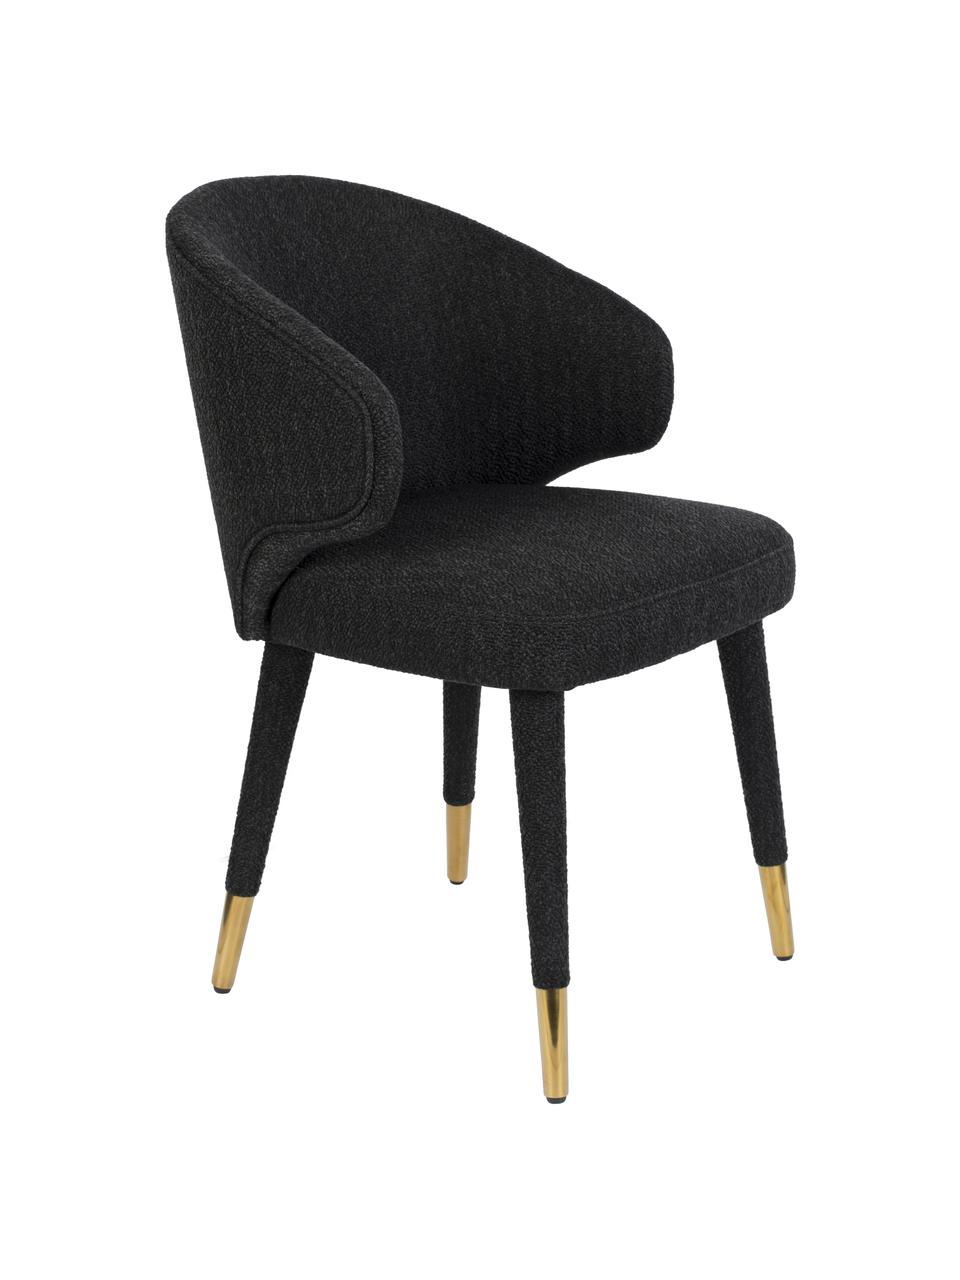 Gestoffeerde stoel Lunar in zwart, Bekleding: 100% polyester fluweel, Frame: multiplex, rubberhout, Poten: gepoedercoat metaal, Geweven stof zwart, 52 x 59 cm